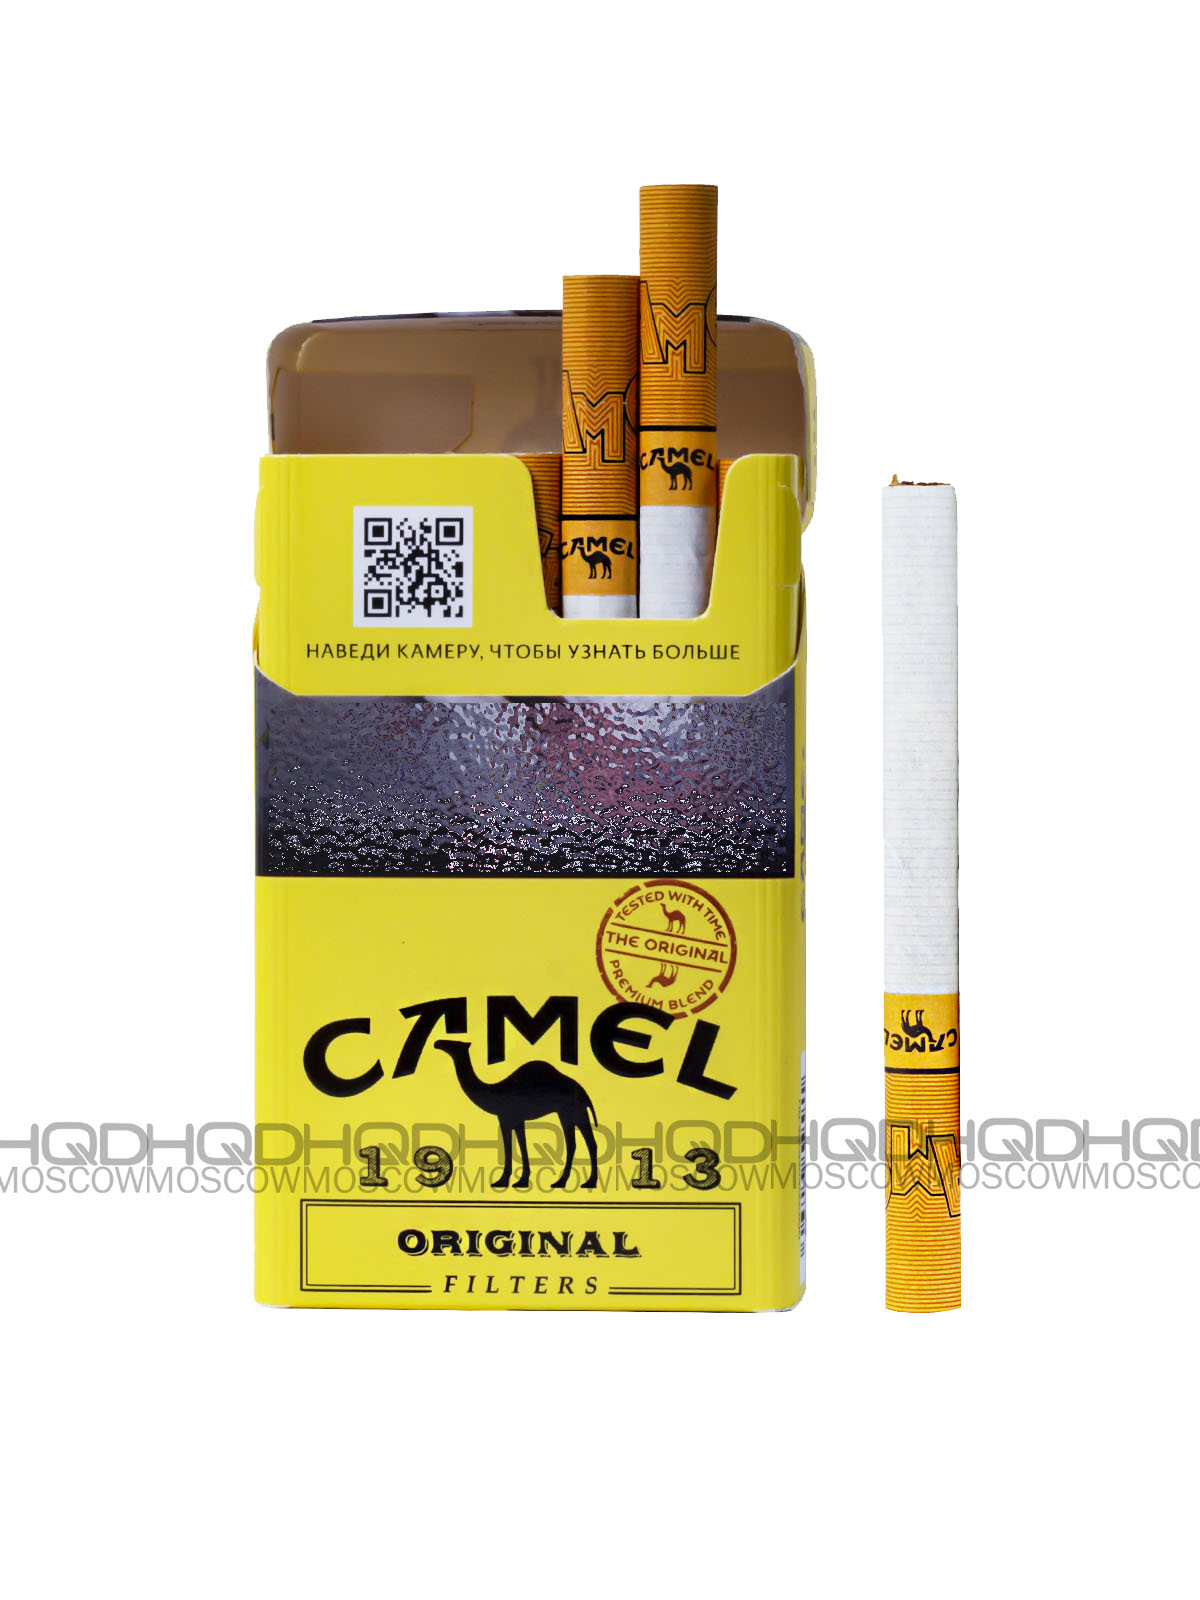 Сигареты Camel Original -1913  1 пачка.